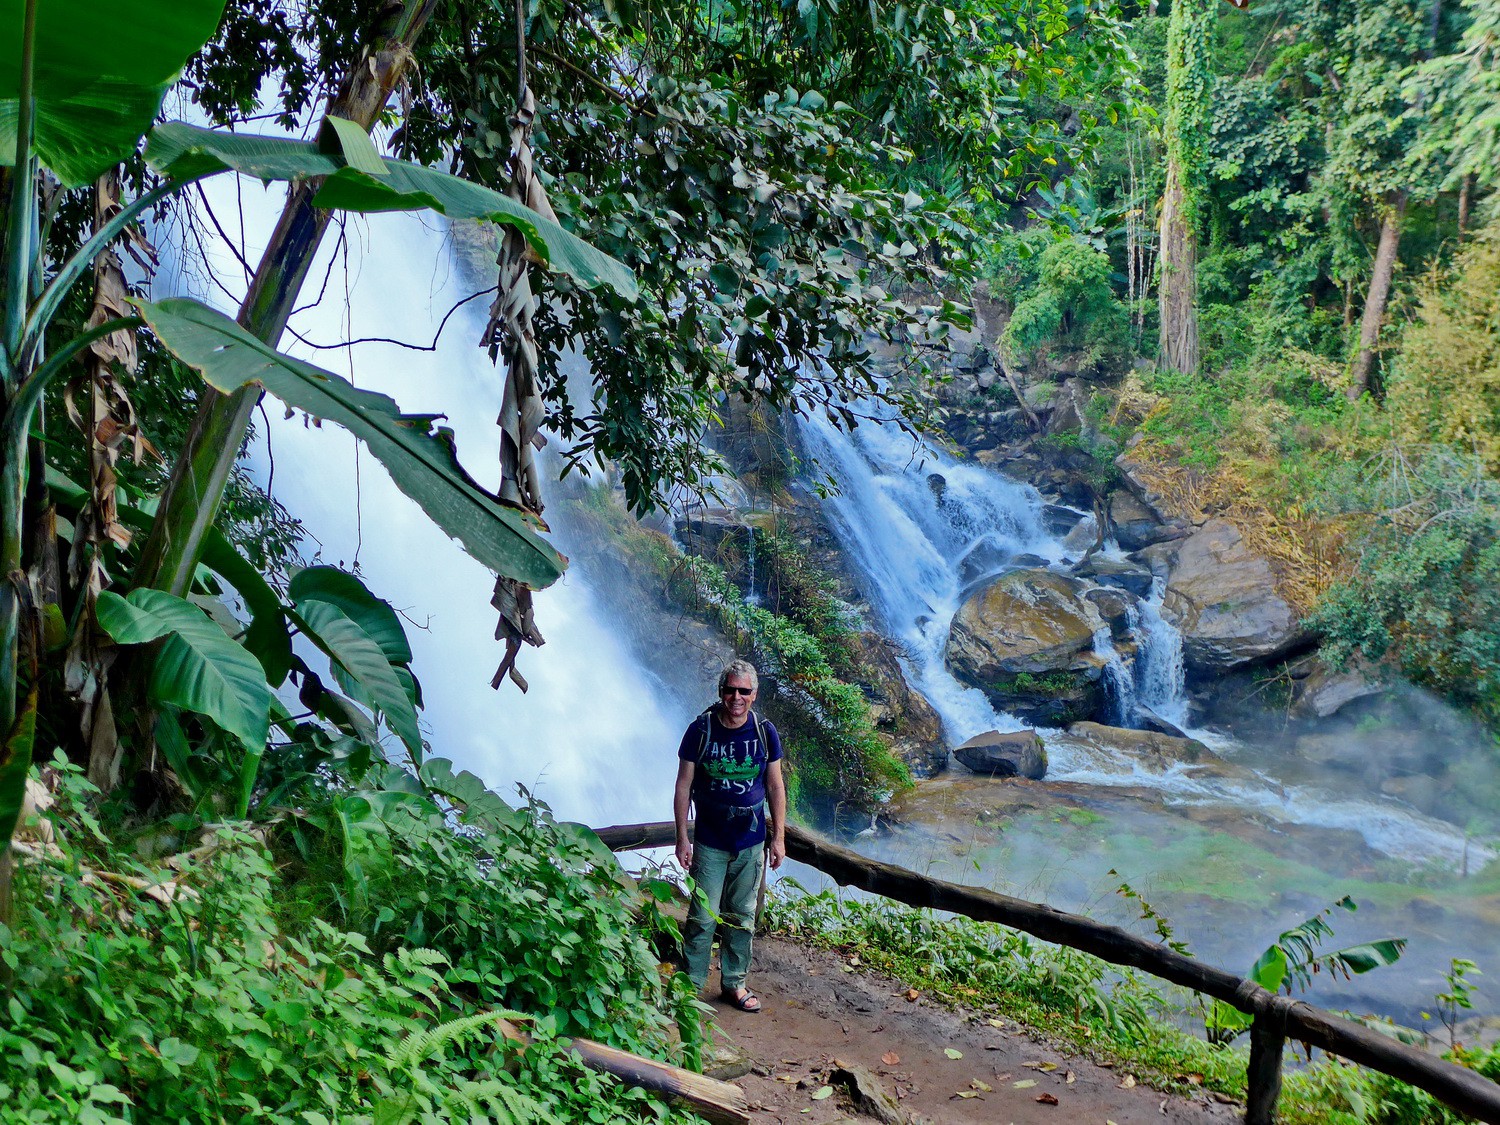 Wachirathan waterfall on foot of Doi Inthanon